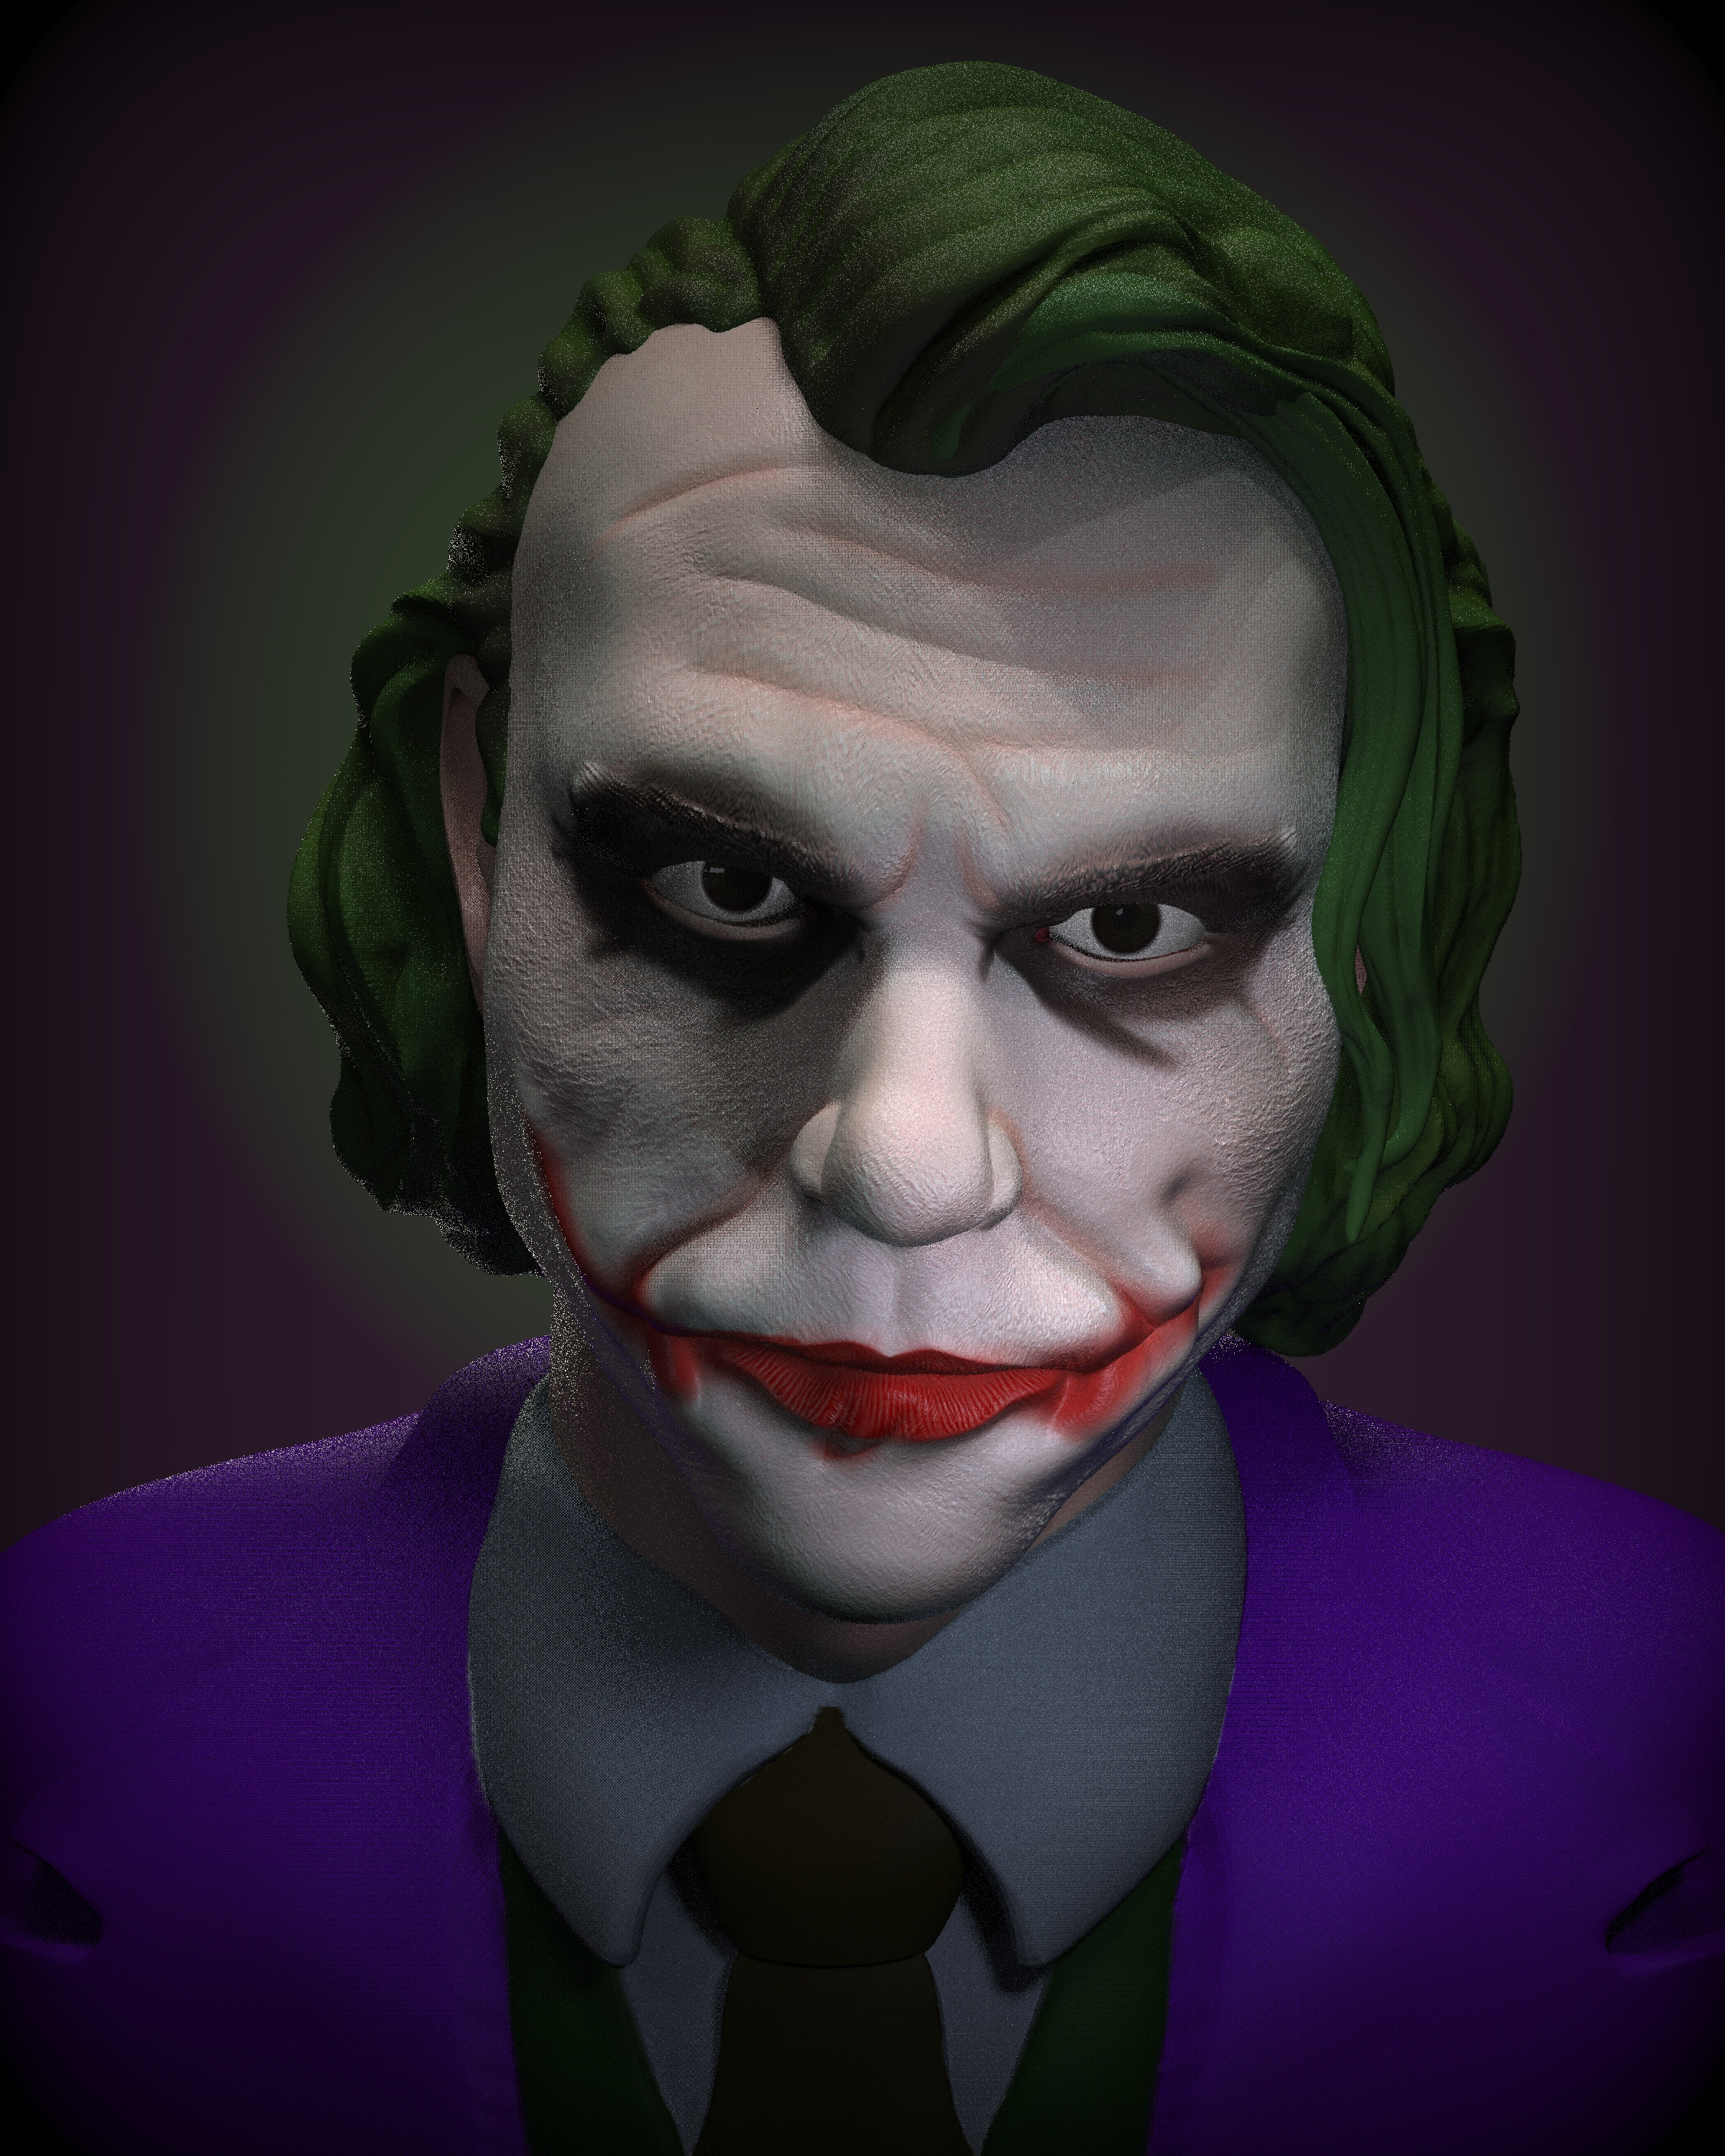 Joker Bust